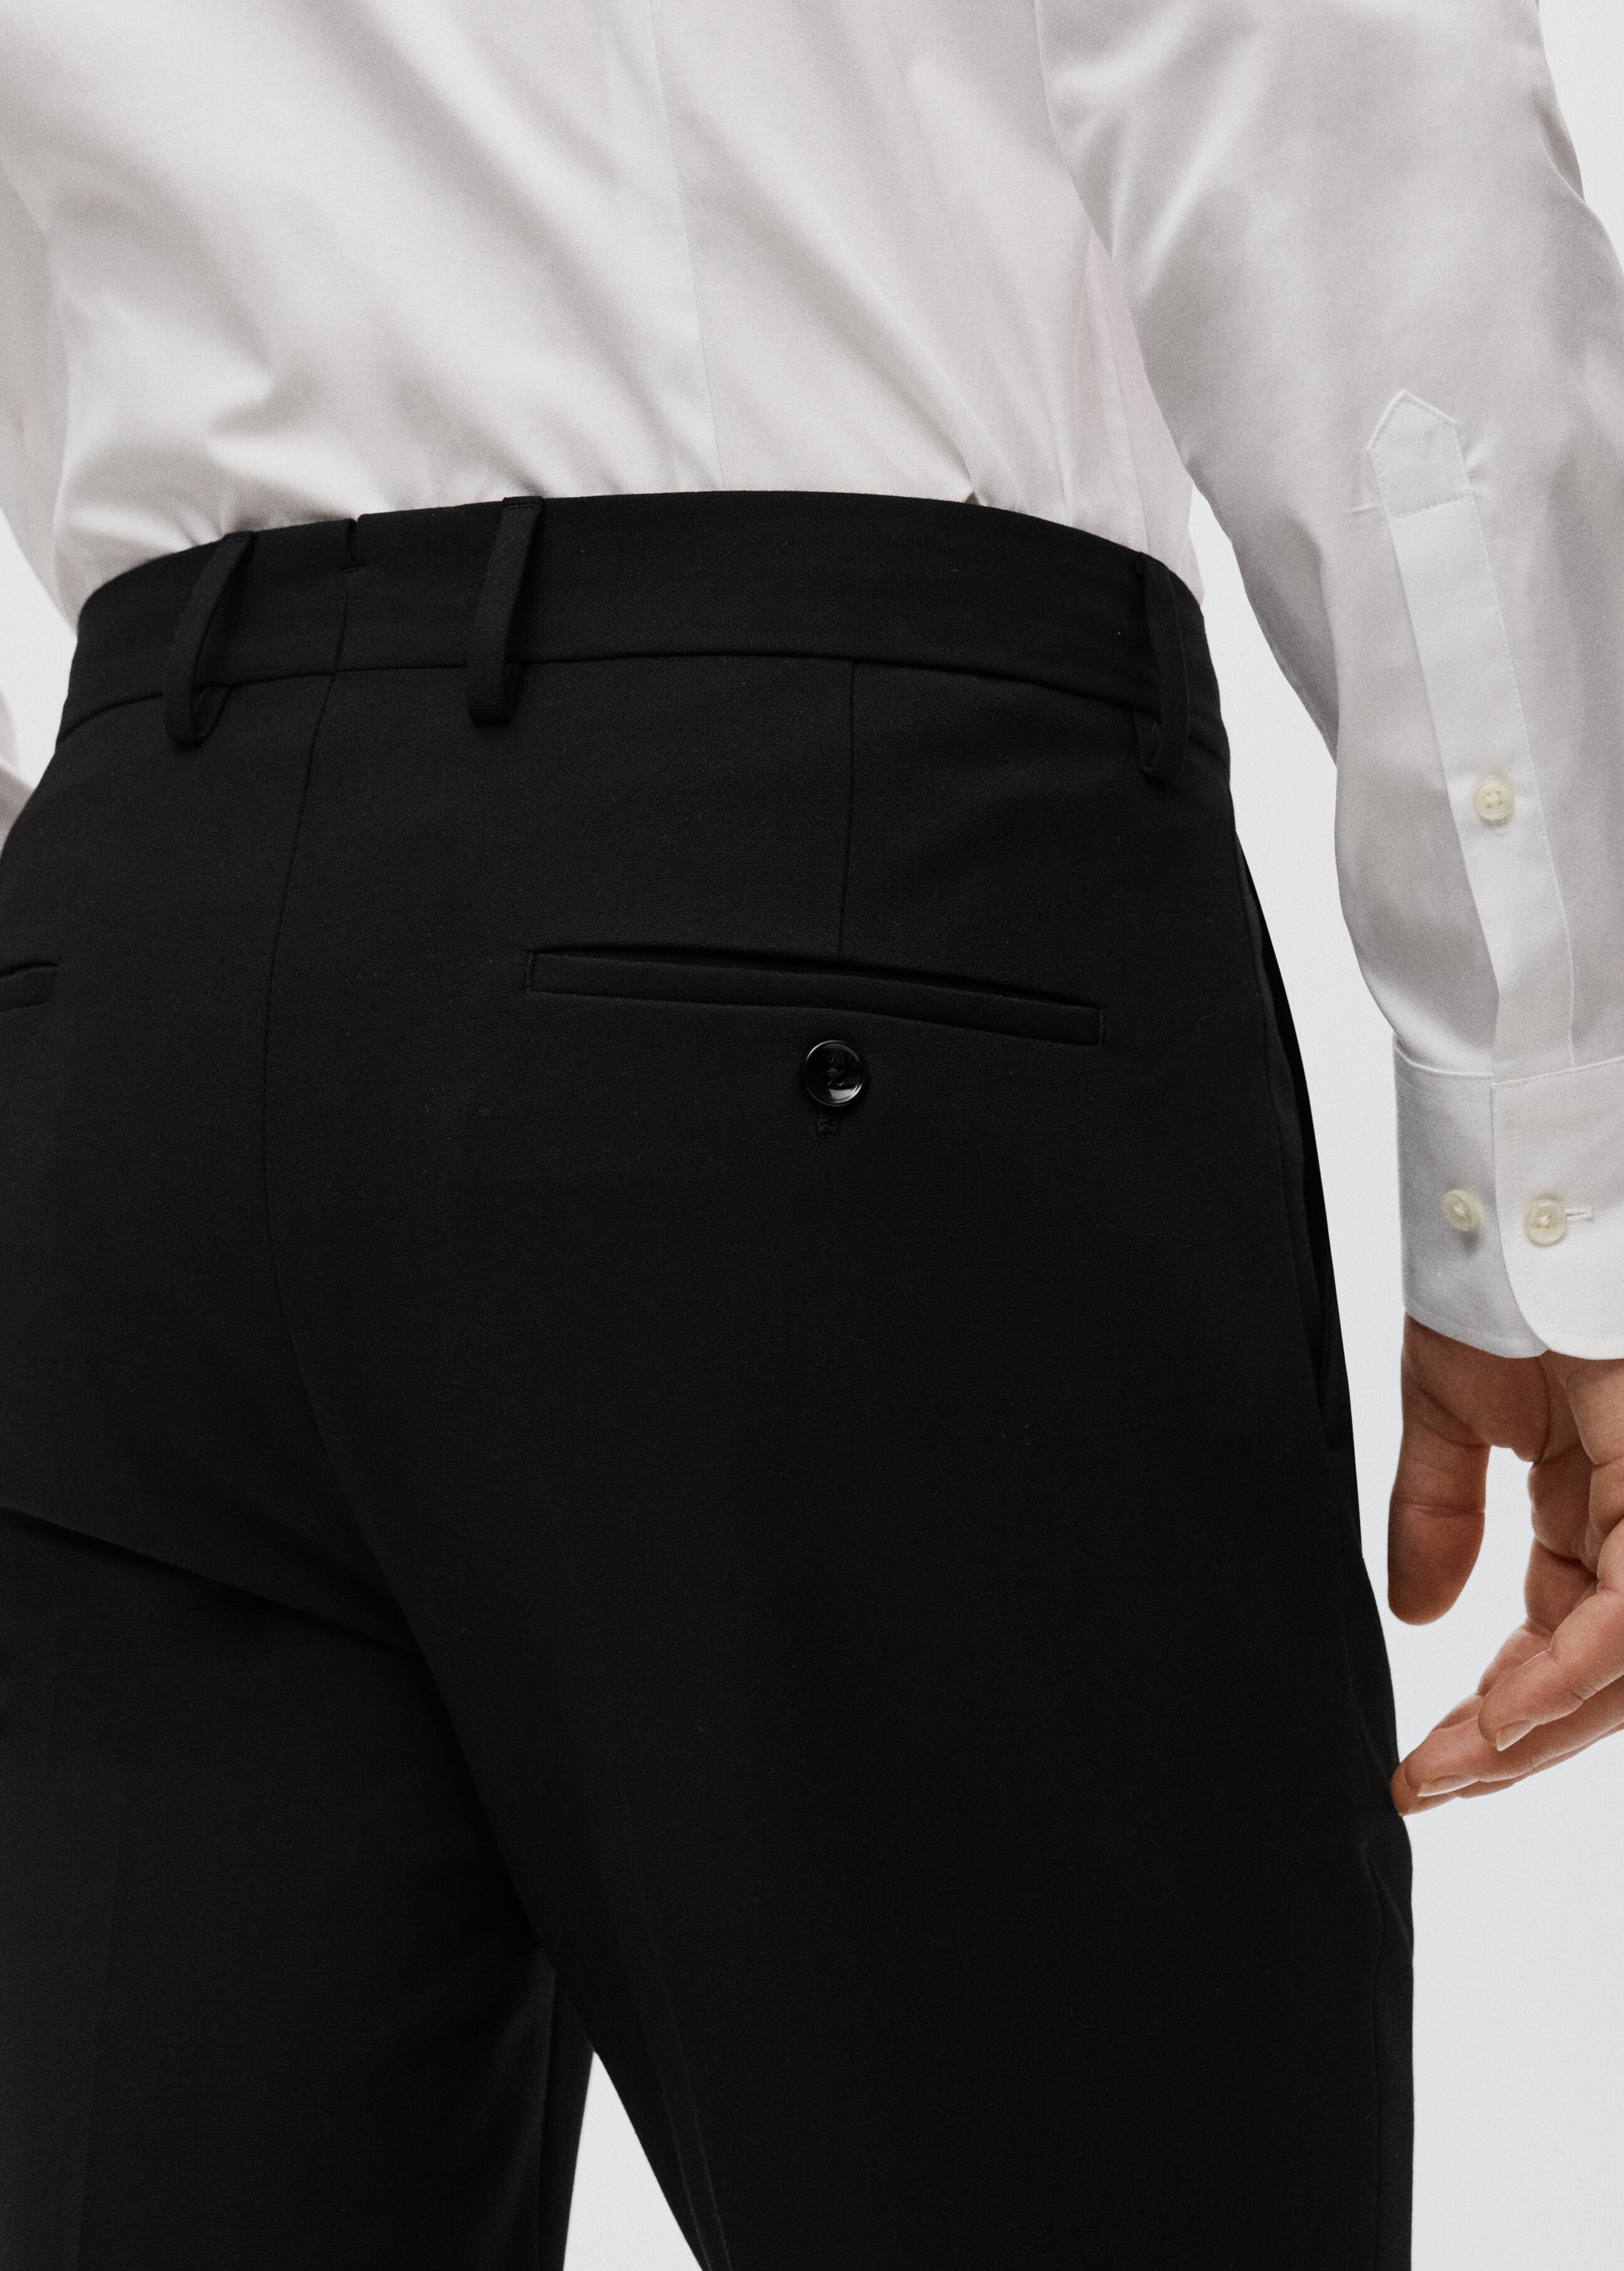 Pantalón traje slim fit - Detalle del artículo 3